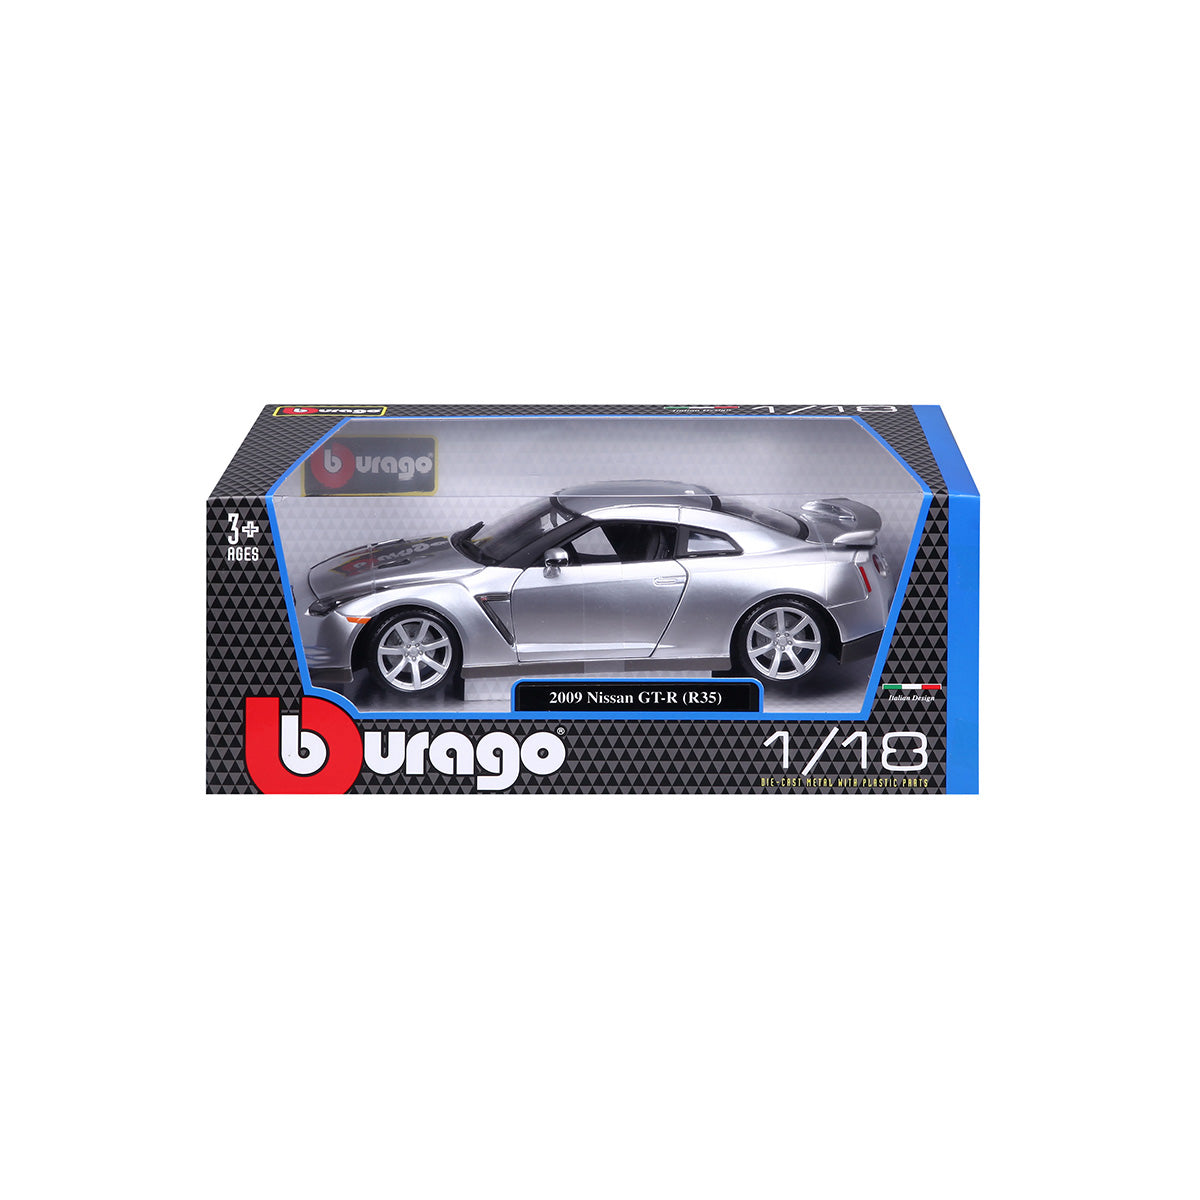 18-12079 SL - Bburago - 1:18 - Nissan GT-R - Argento